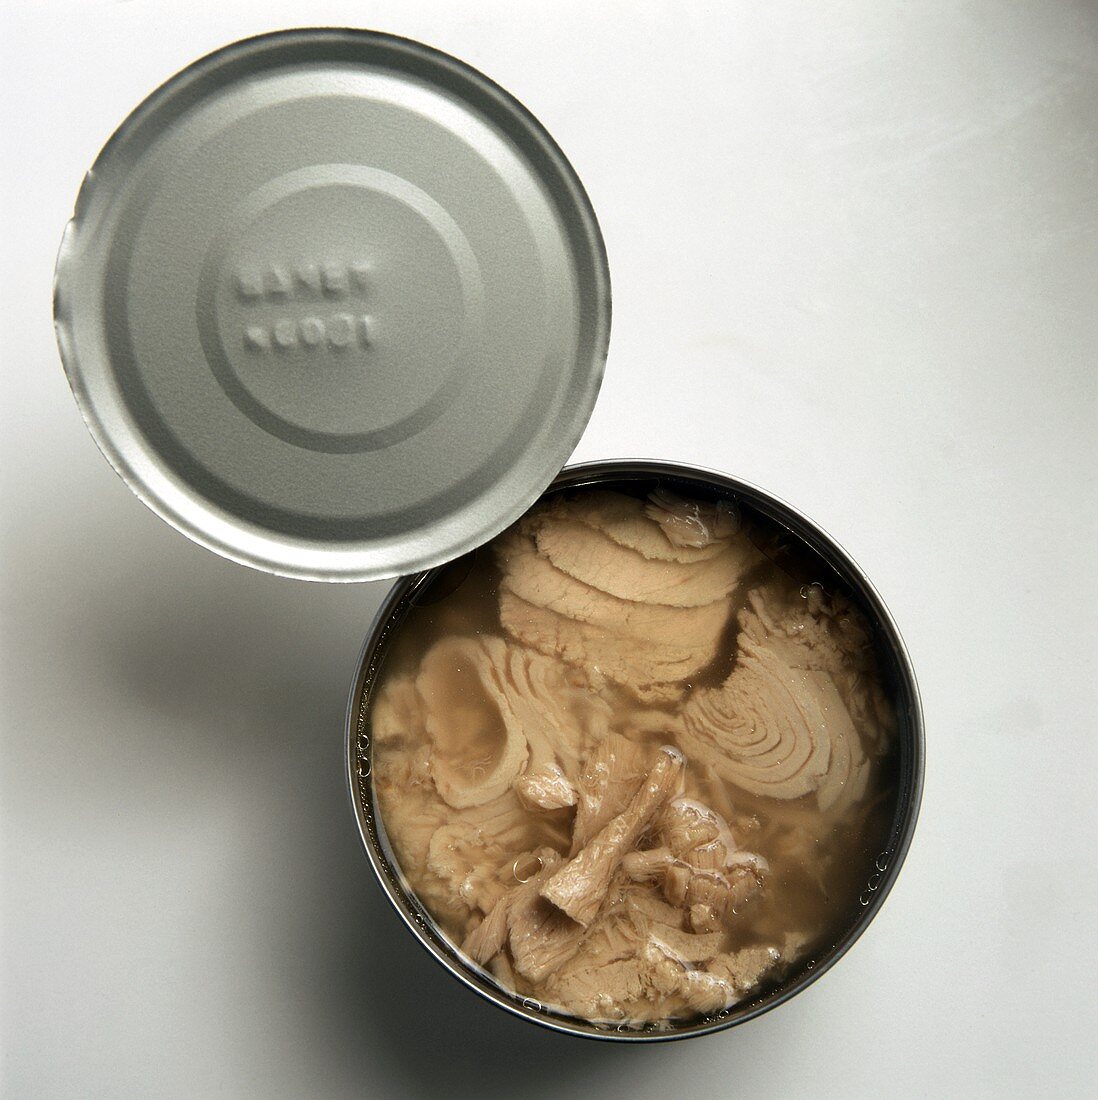 Tuna in an opened can